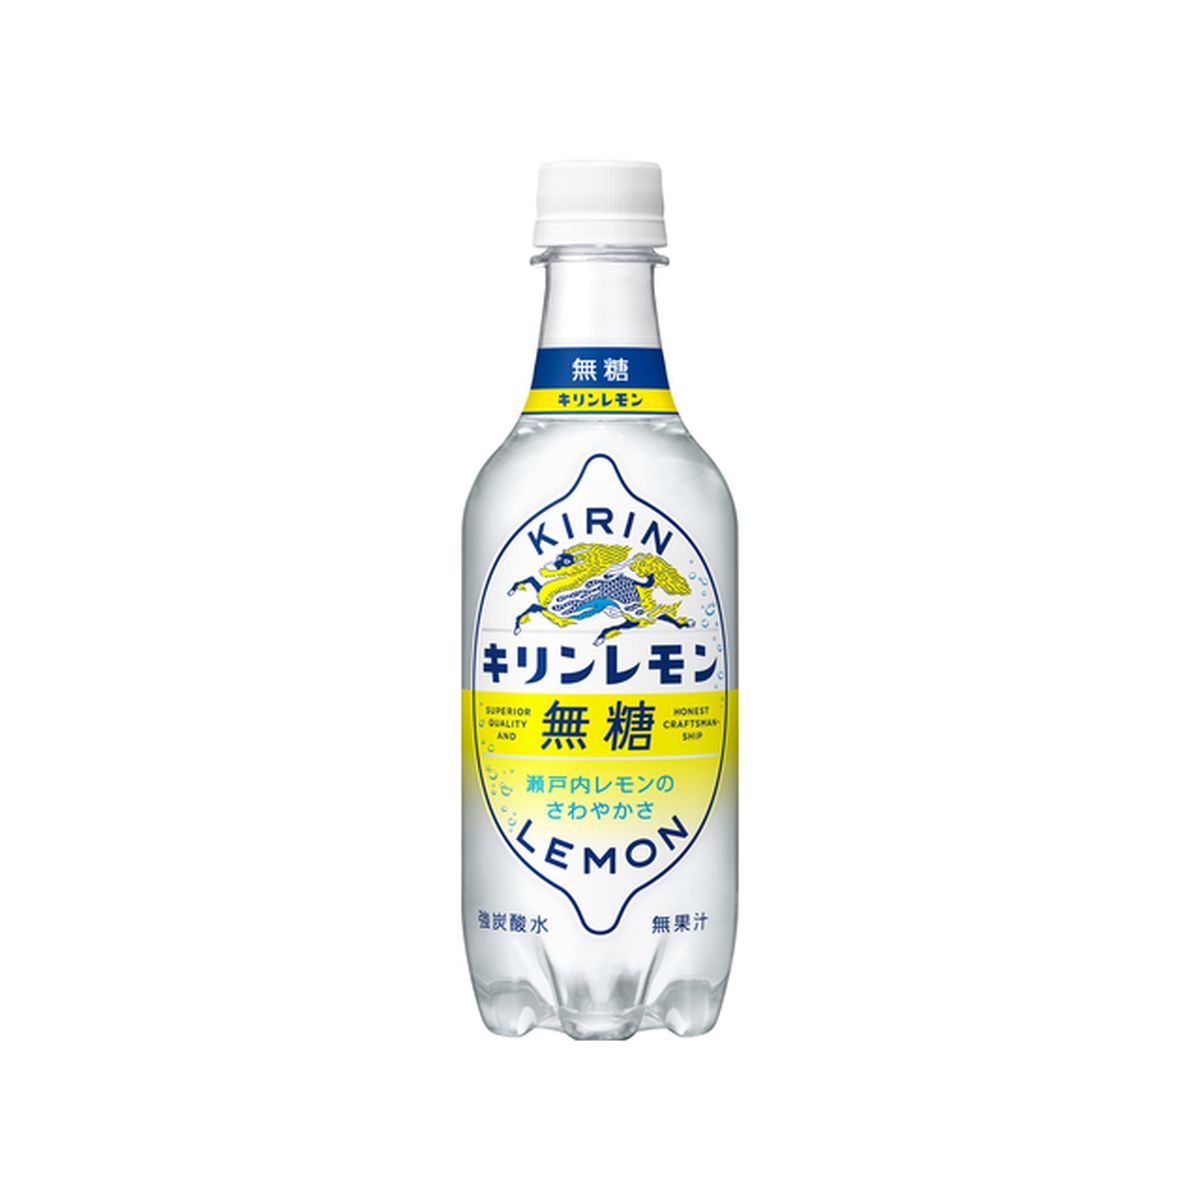 【24個入り】キリン キリンレモン 無糖 450ml